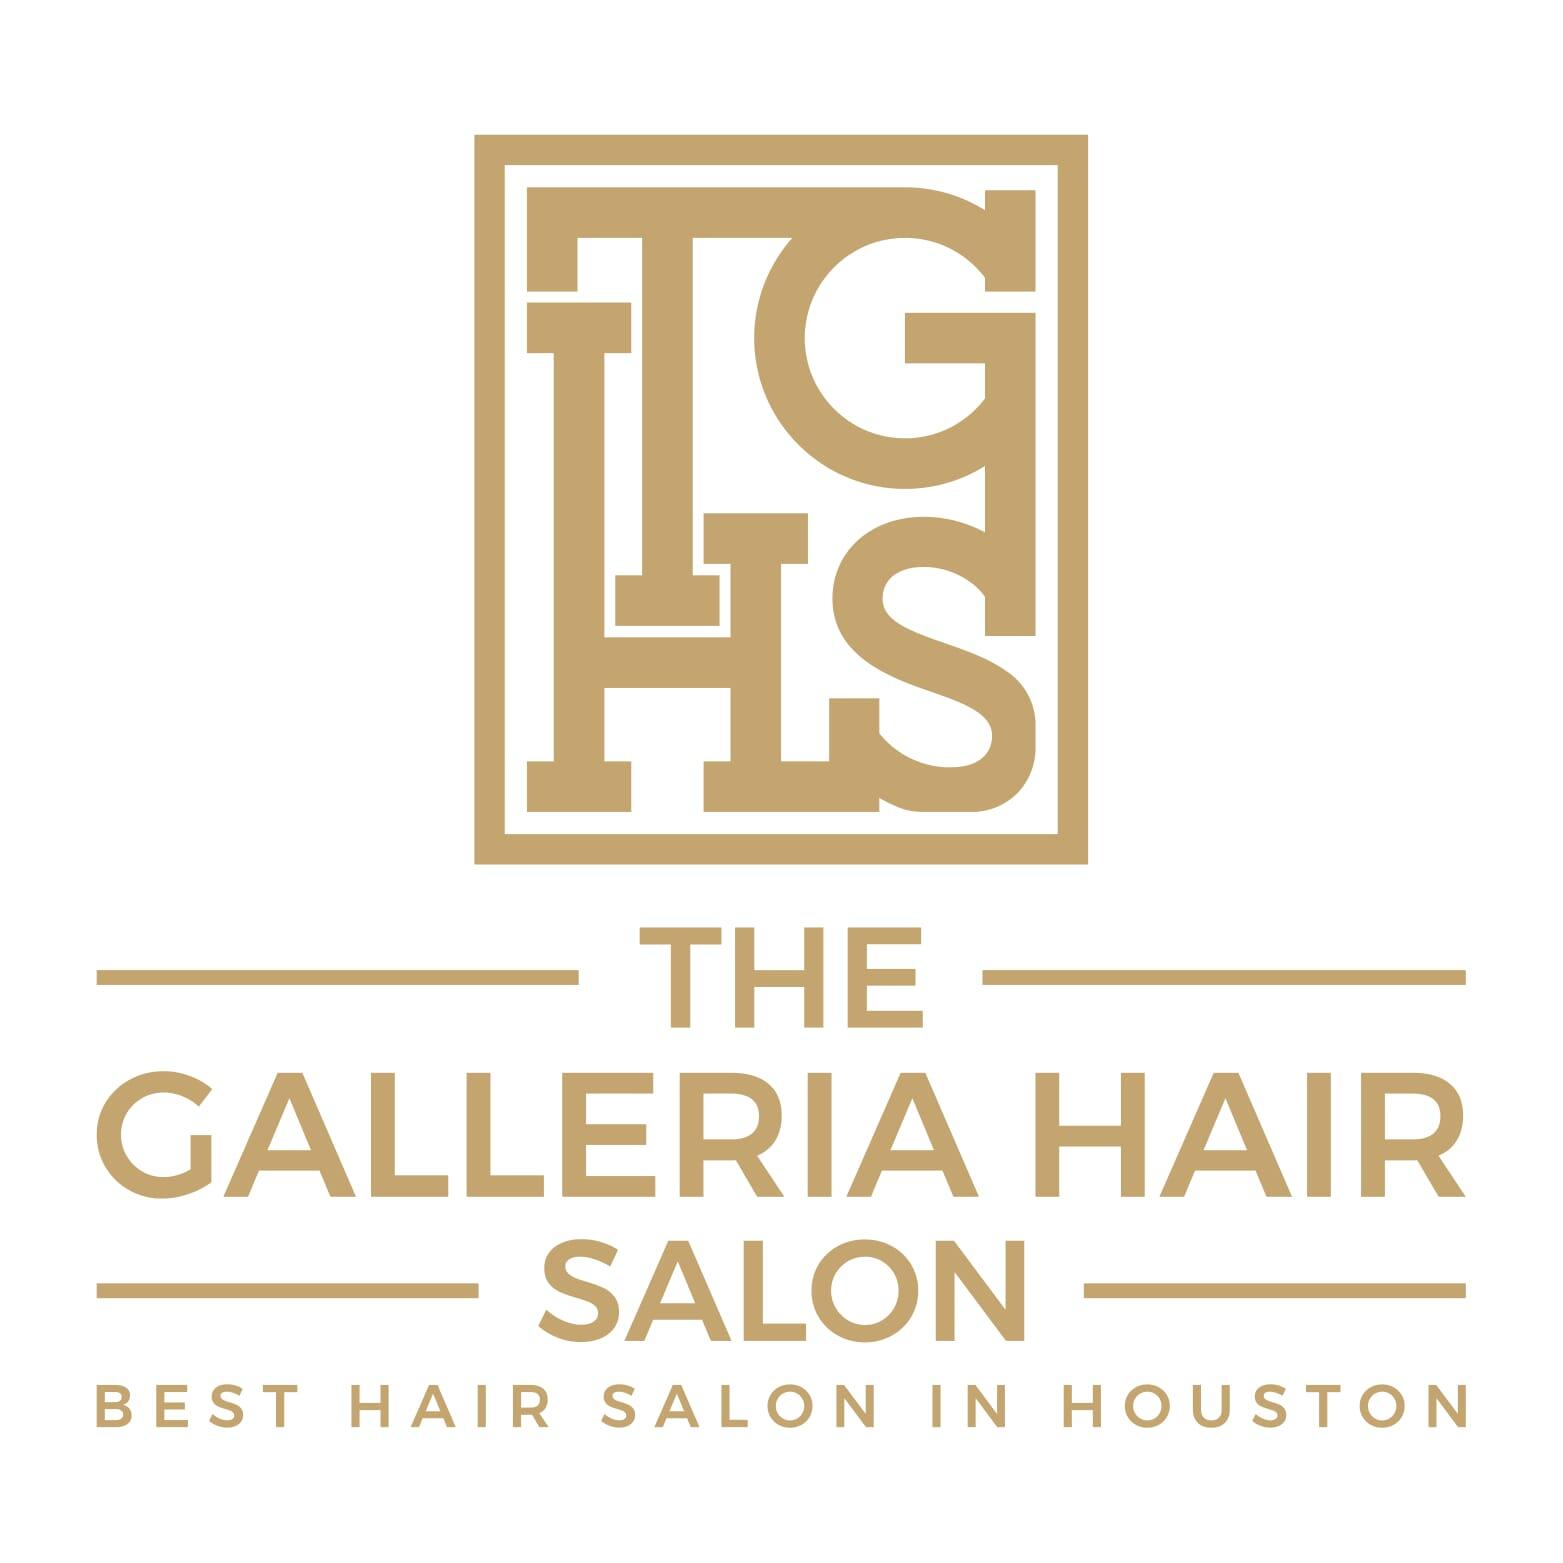 The Galleria Hair Salon - The Best Hair Salon in Houston! - Houston, TX -  Nextdoor